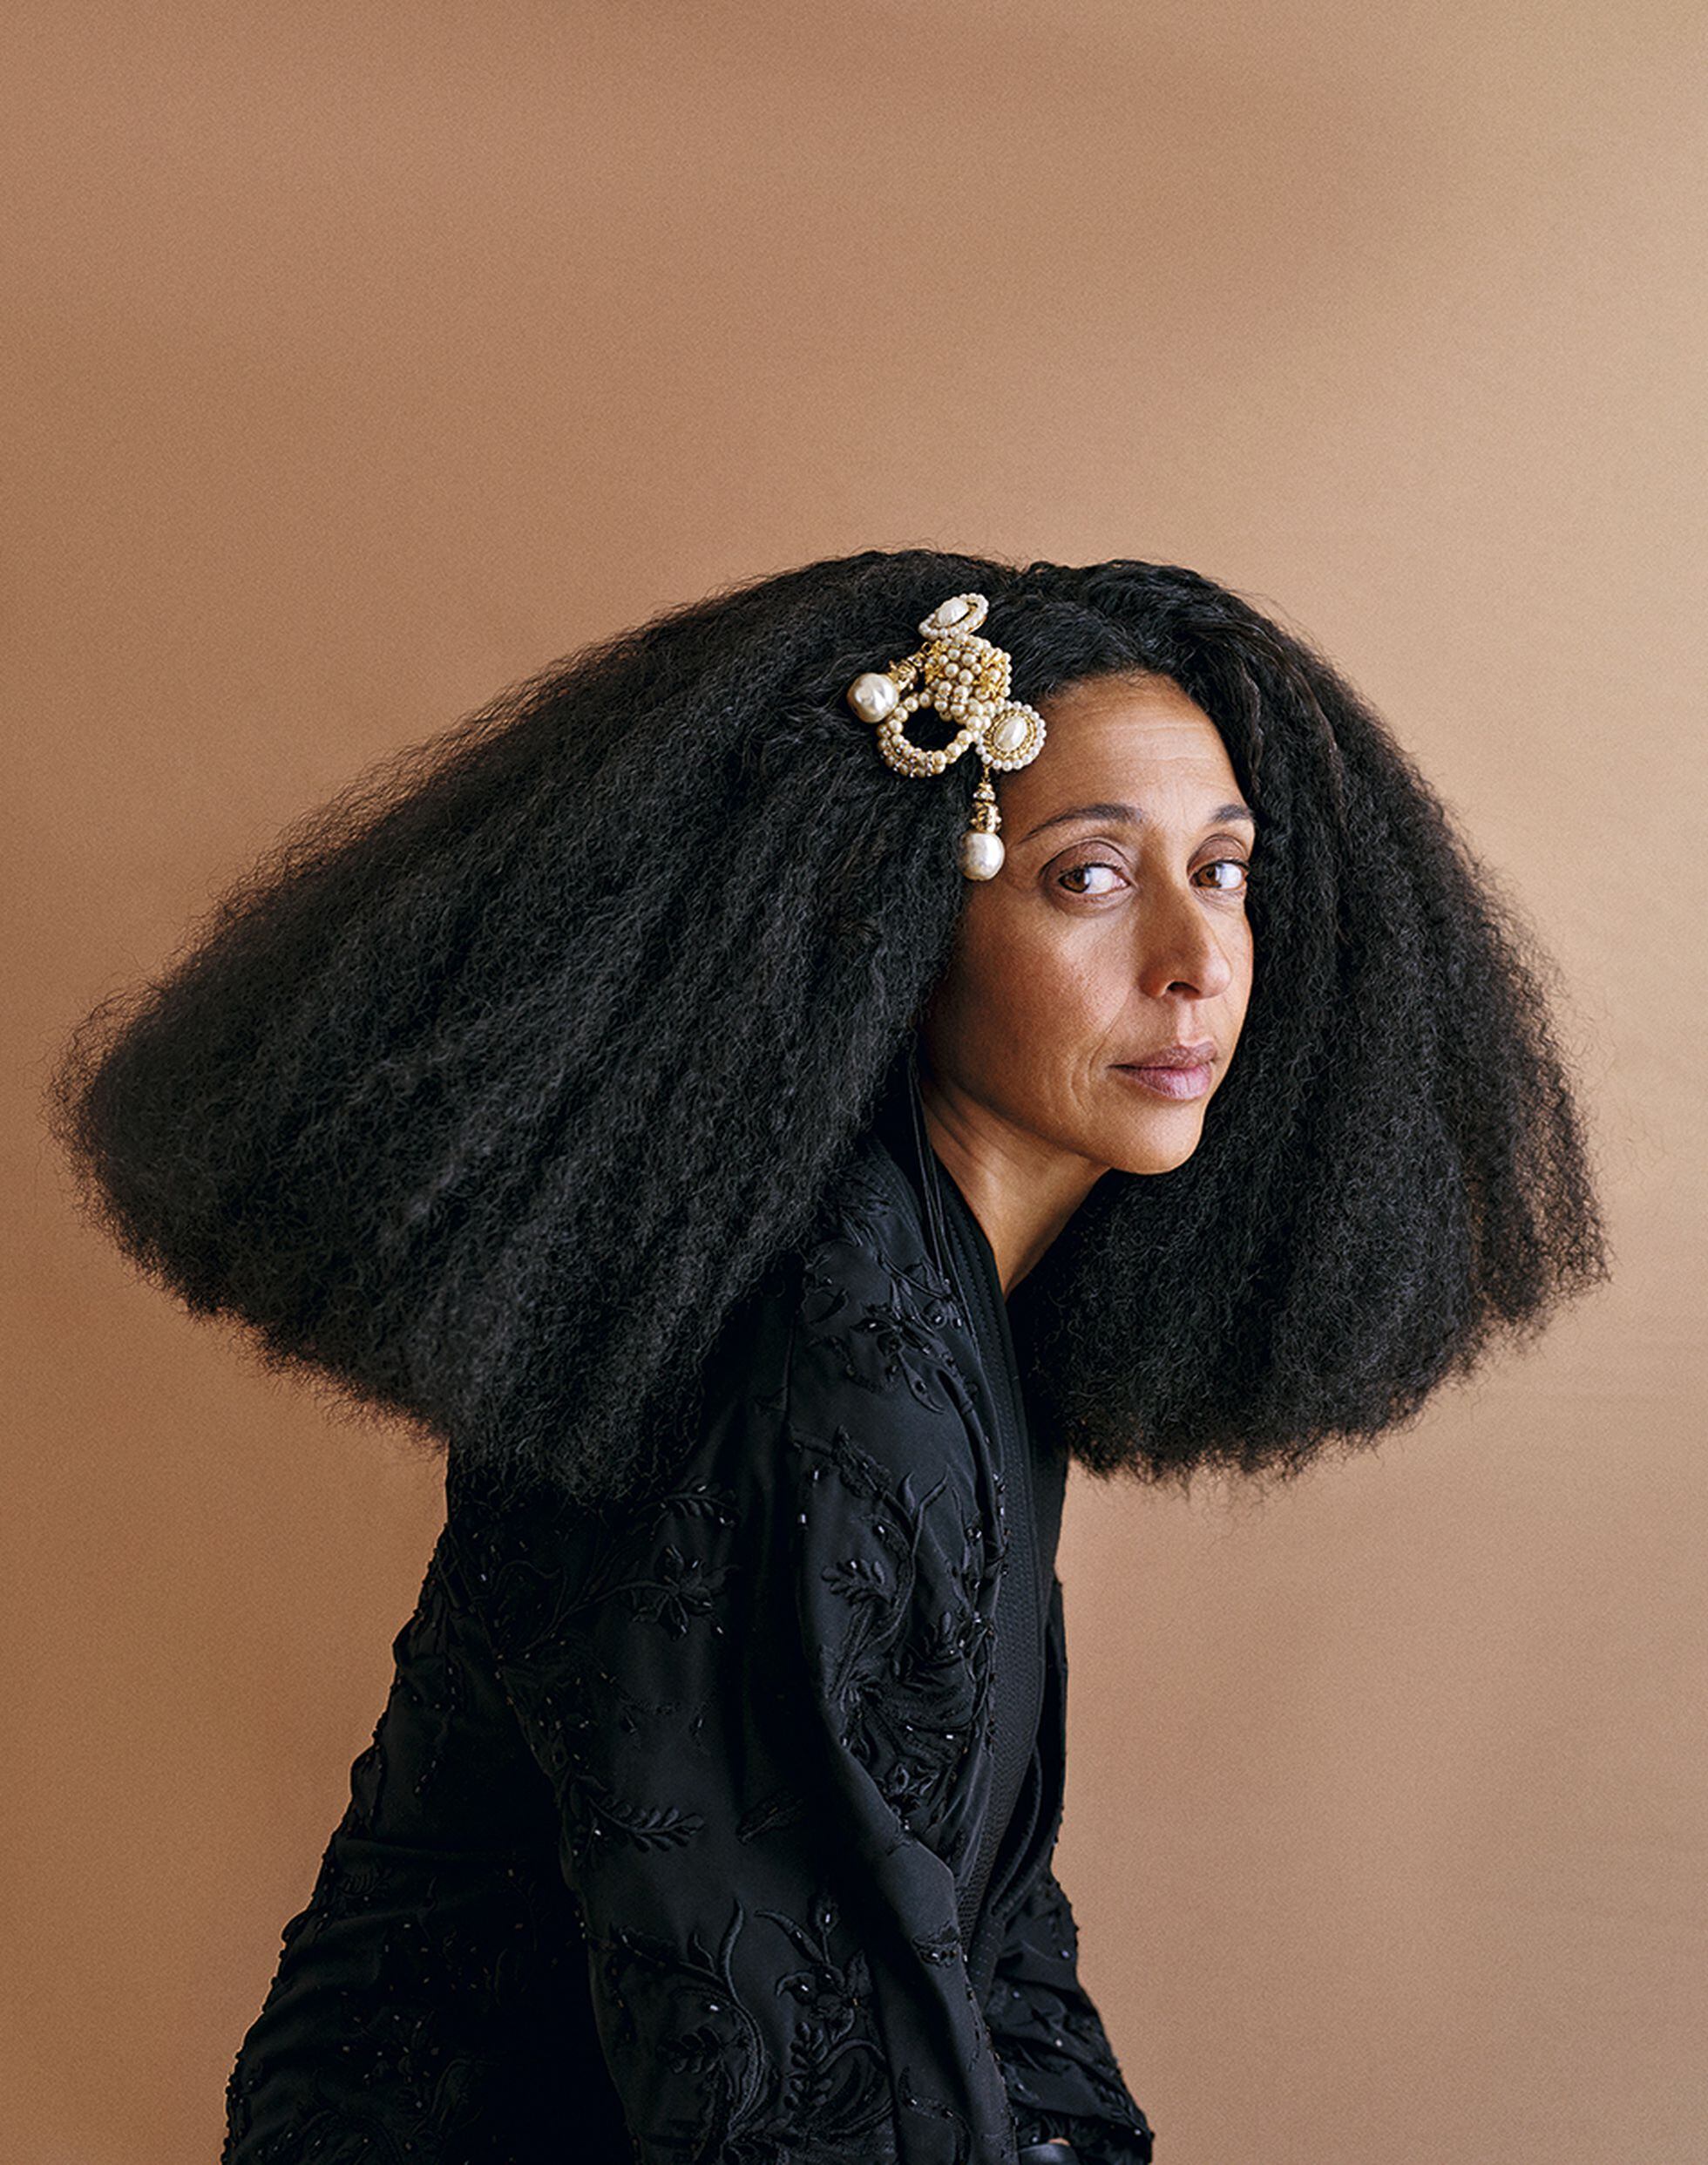 Black women - Shooting realizado por la fotógrafa Noah Pharrell junto a Enri Mür Studio.